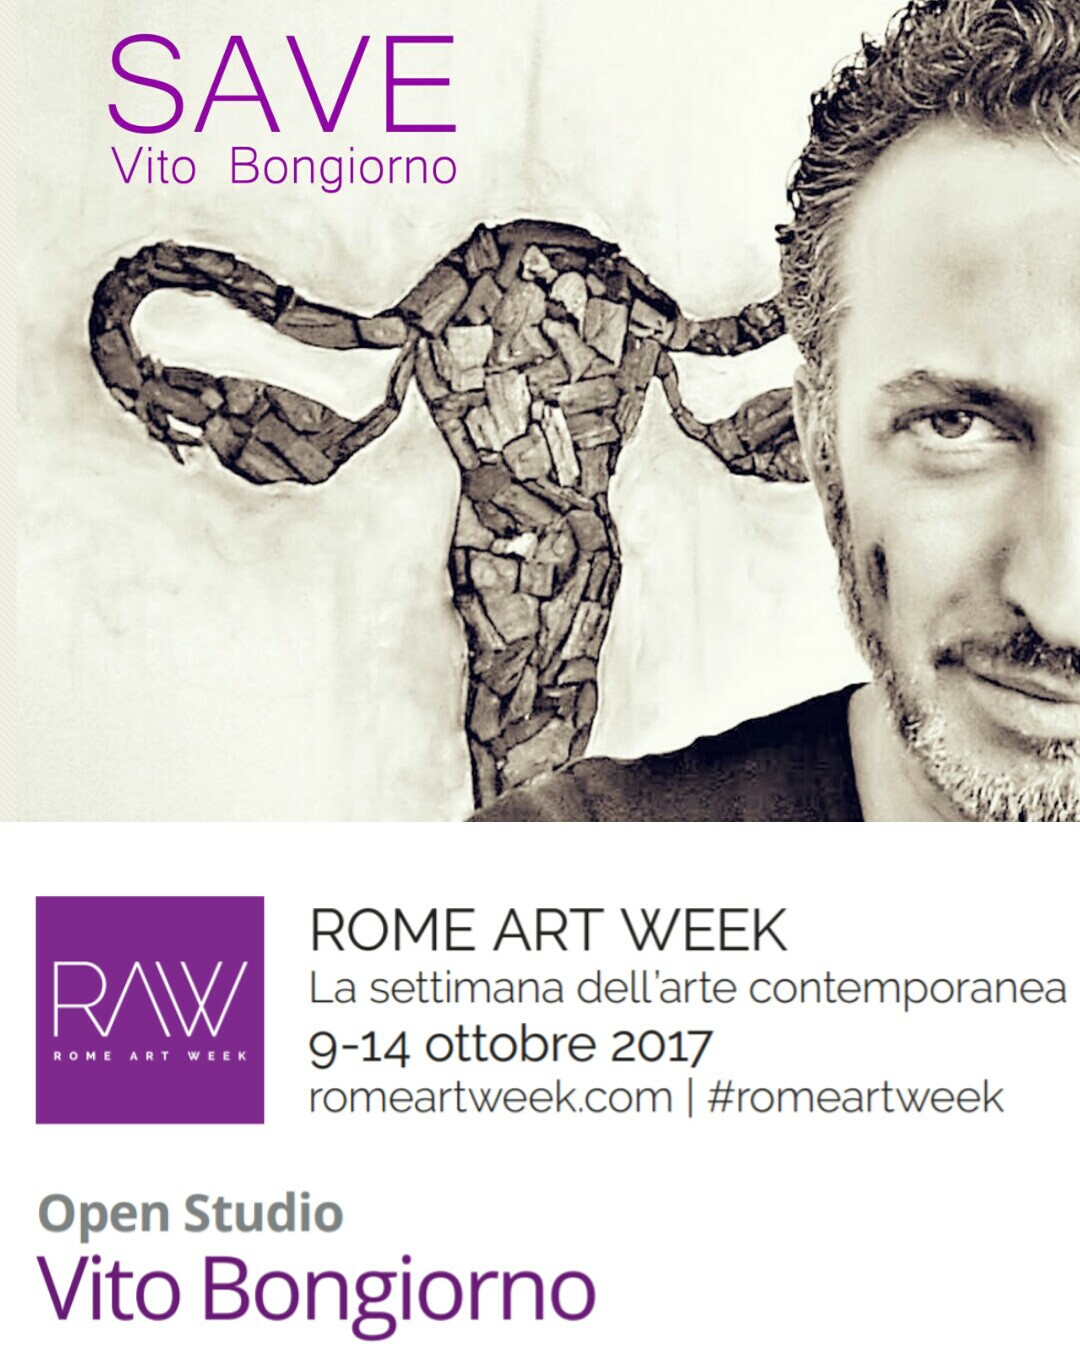 Save Vito Bongiorno Rome Art Week 2017